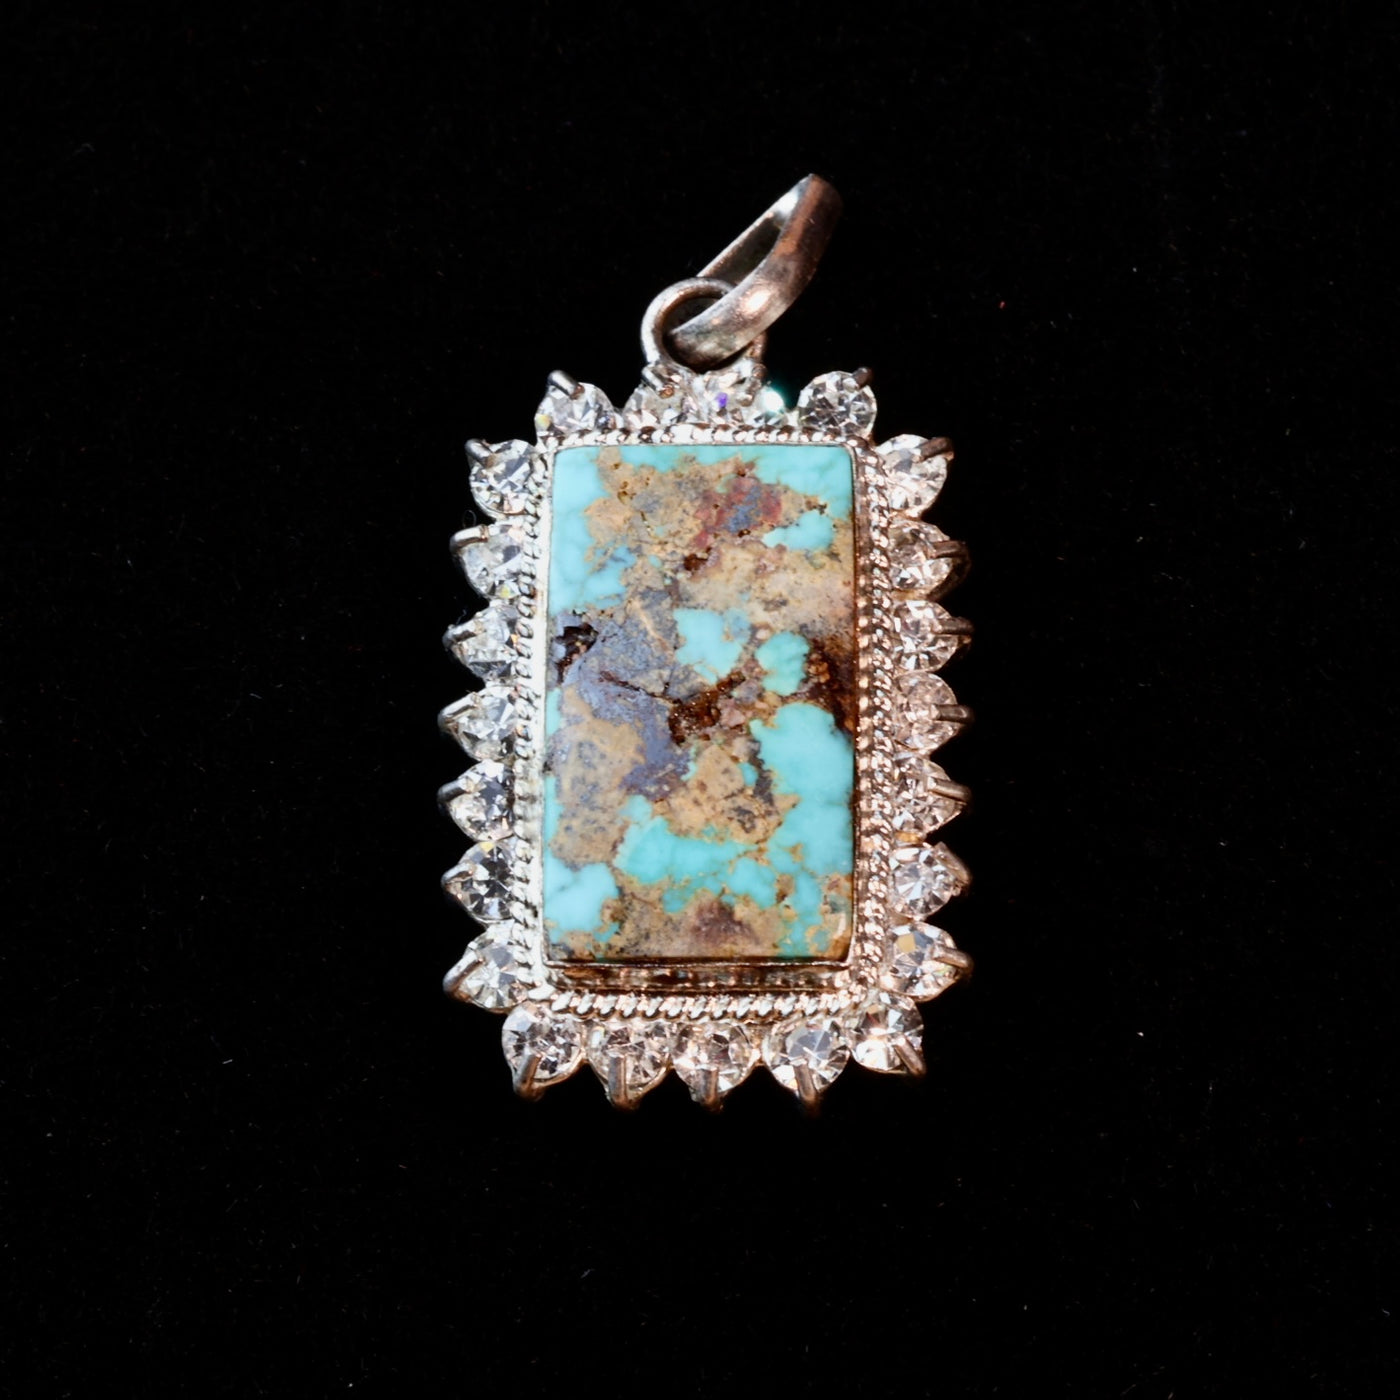 Neyshabur (Nishapur) Turquoise Stone Pendant | Feroza Pendant with Cubic Zirconia - Al Ali Gems